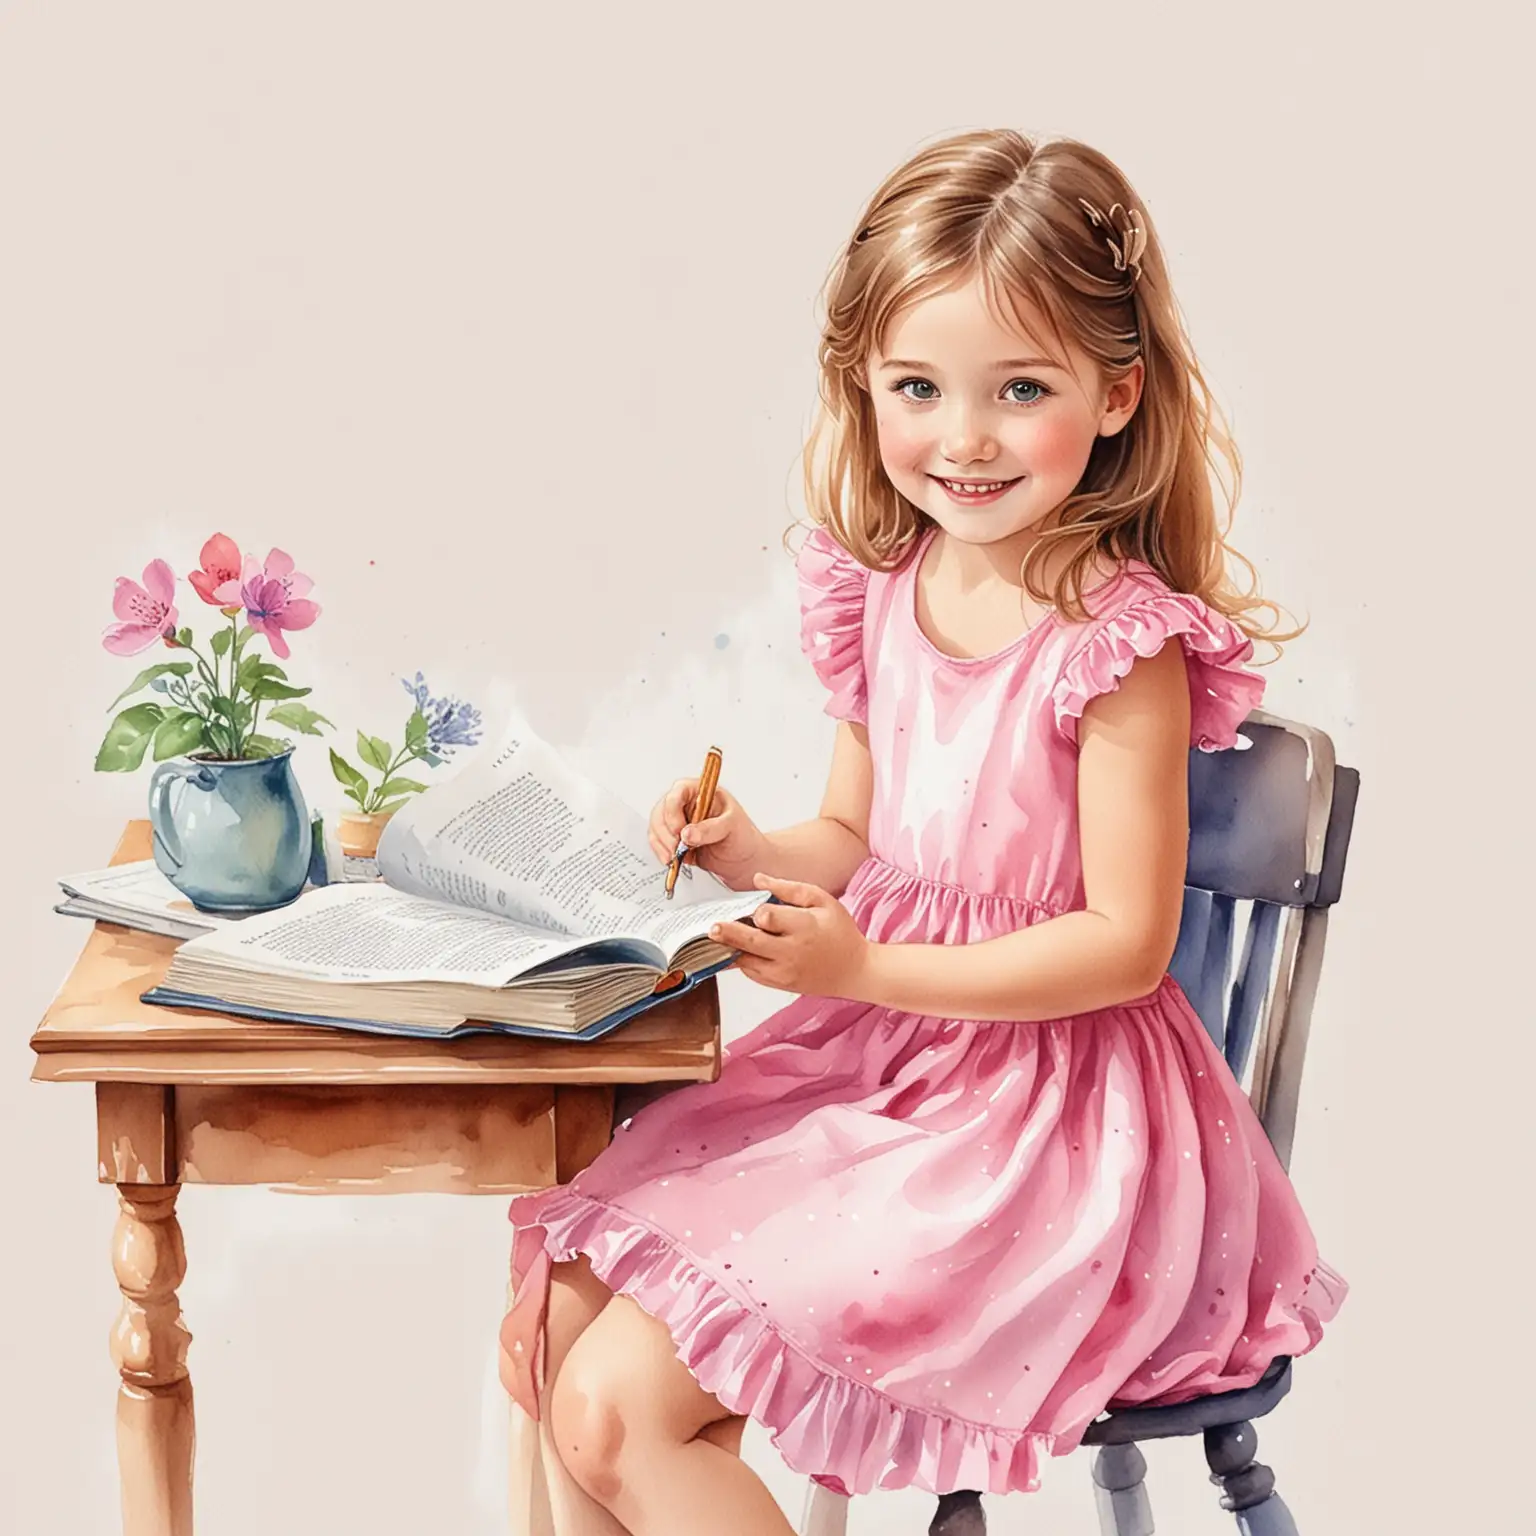 ilustrace veselý dívka 5 let,čte si knihu, v lavici, škola, kouzelná postava, růžové šaty,  bílé pozadí, akvarel ilustrace